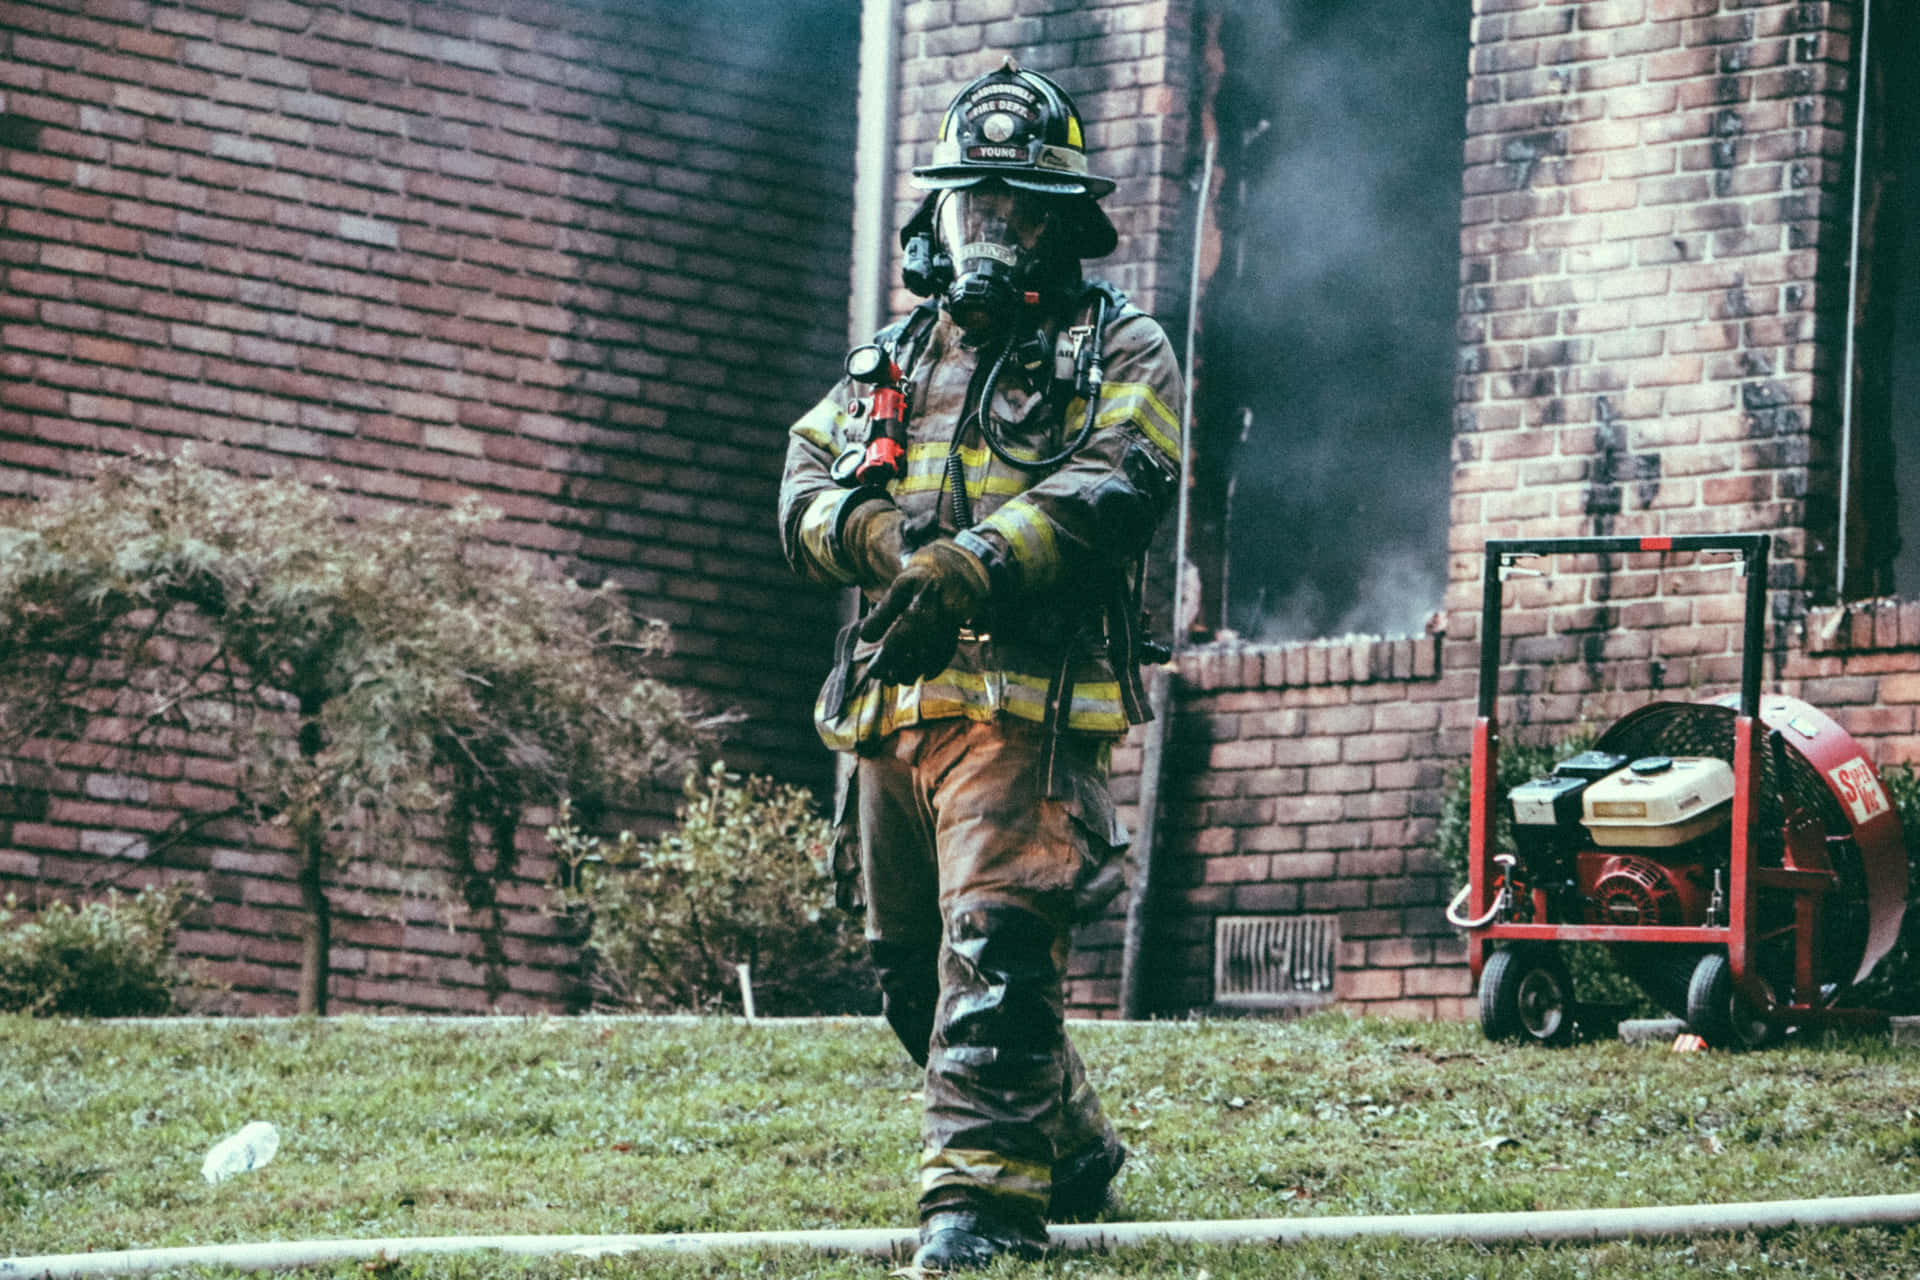 Brave Firefighter Battling the Blaze